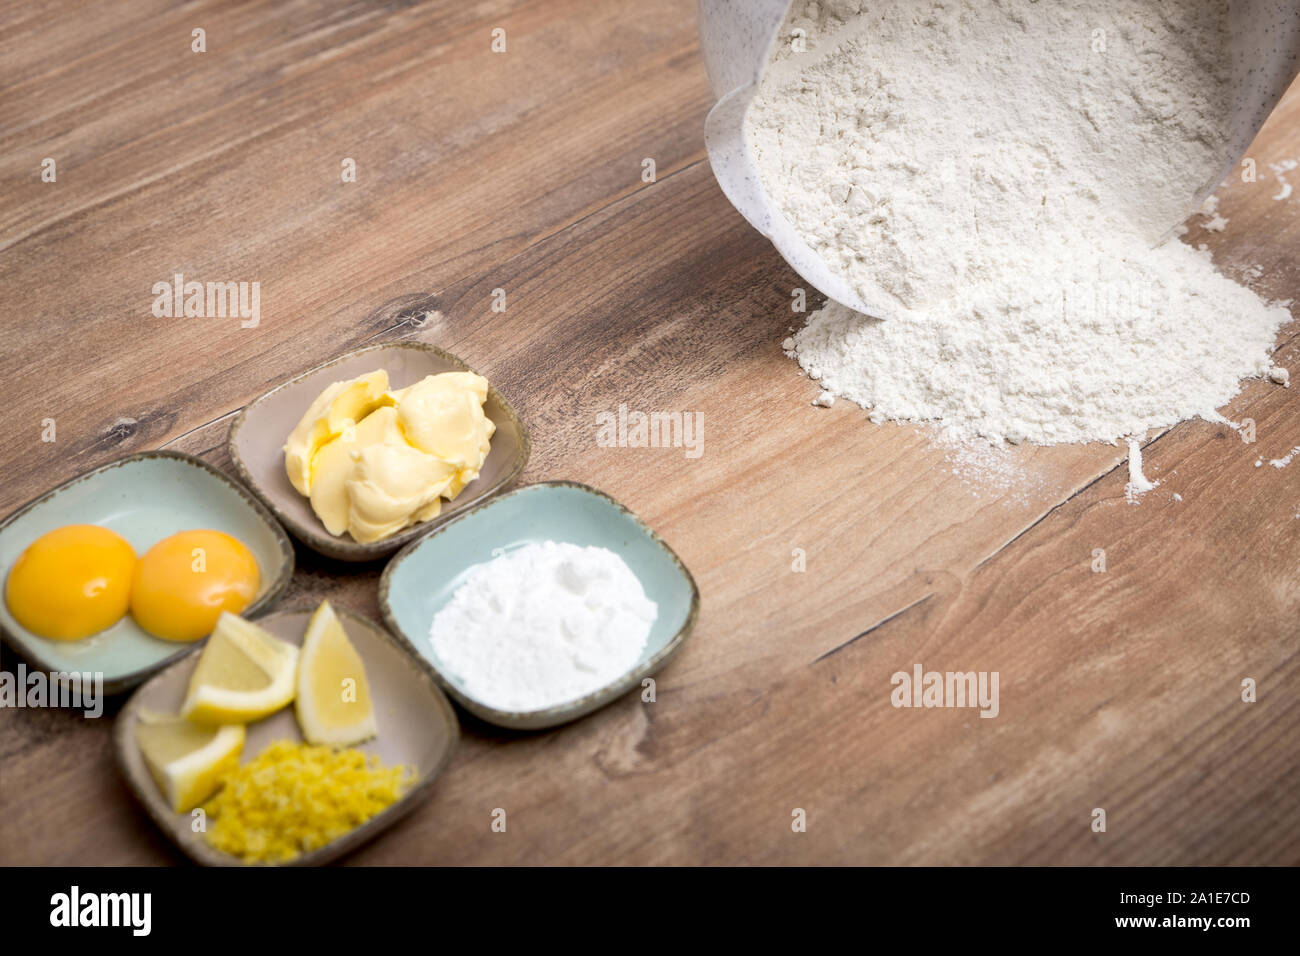 Ingrédients pour un gâteau fait maison ou de pâte à biscuits, la farine sur la table en bois Banque D'Images